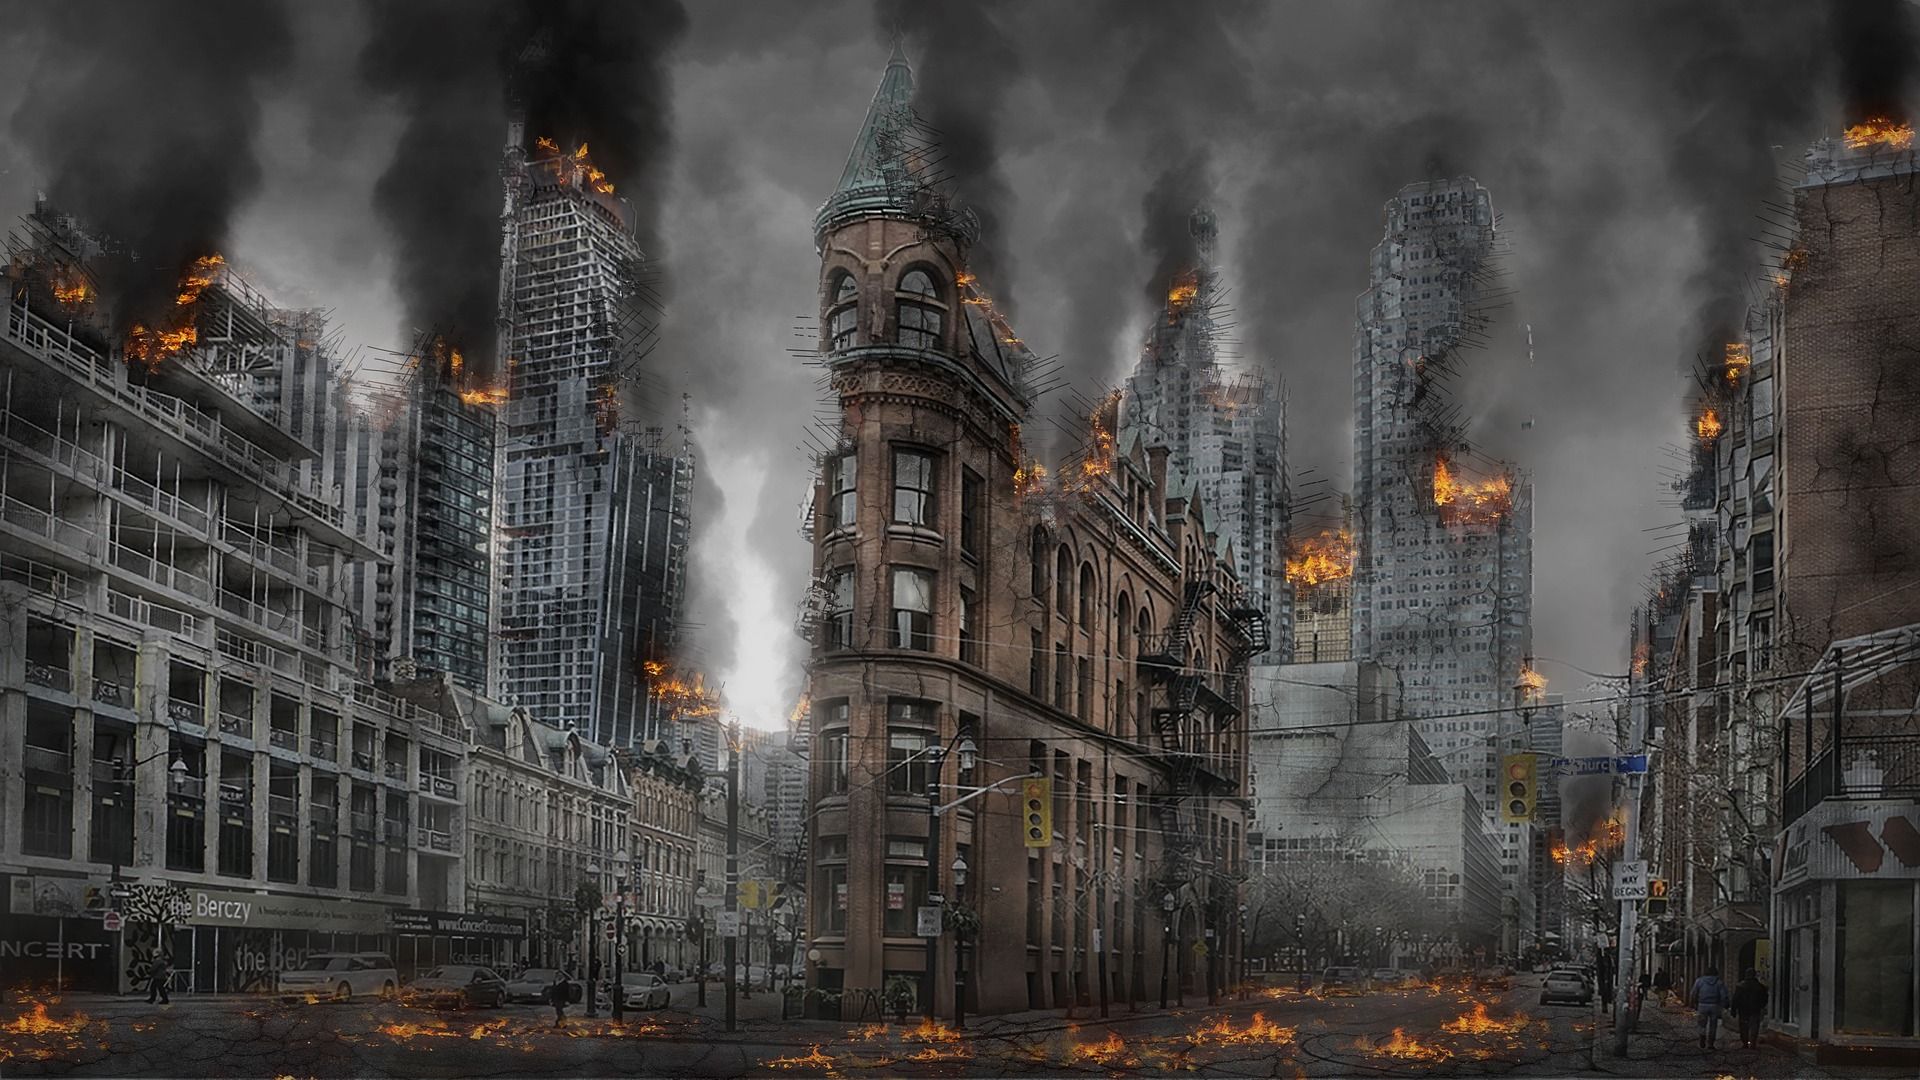 composition de Manhattan en flammes - Image par Brigitte Werner de https://pixabay.com/fr/photos/apocalypse-guerre-catastrophe-2459465/